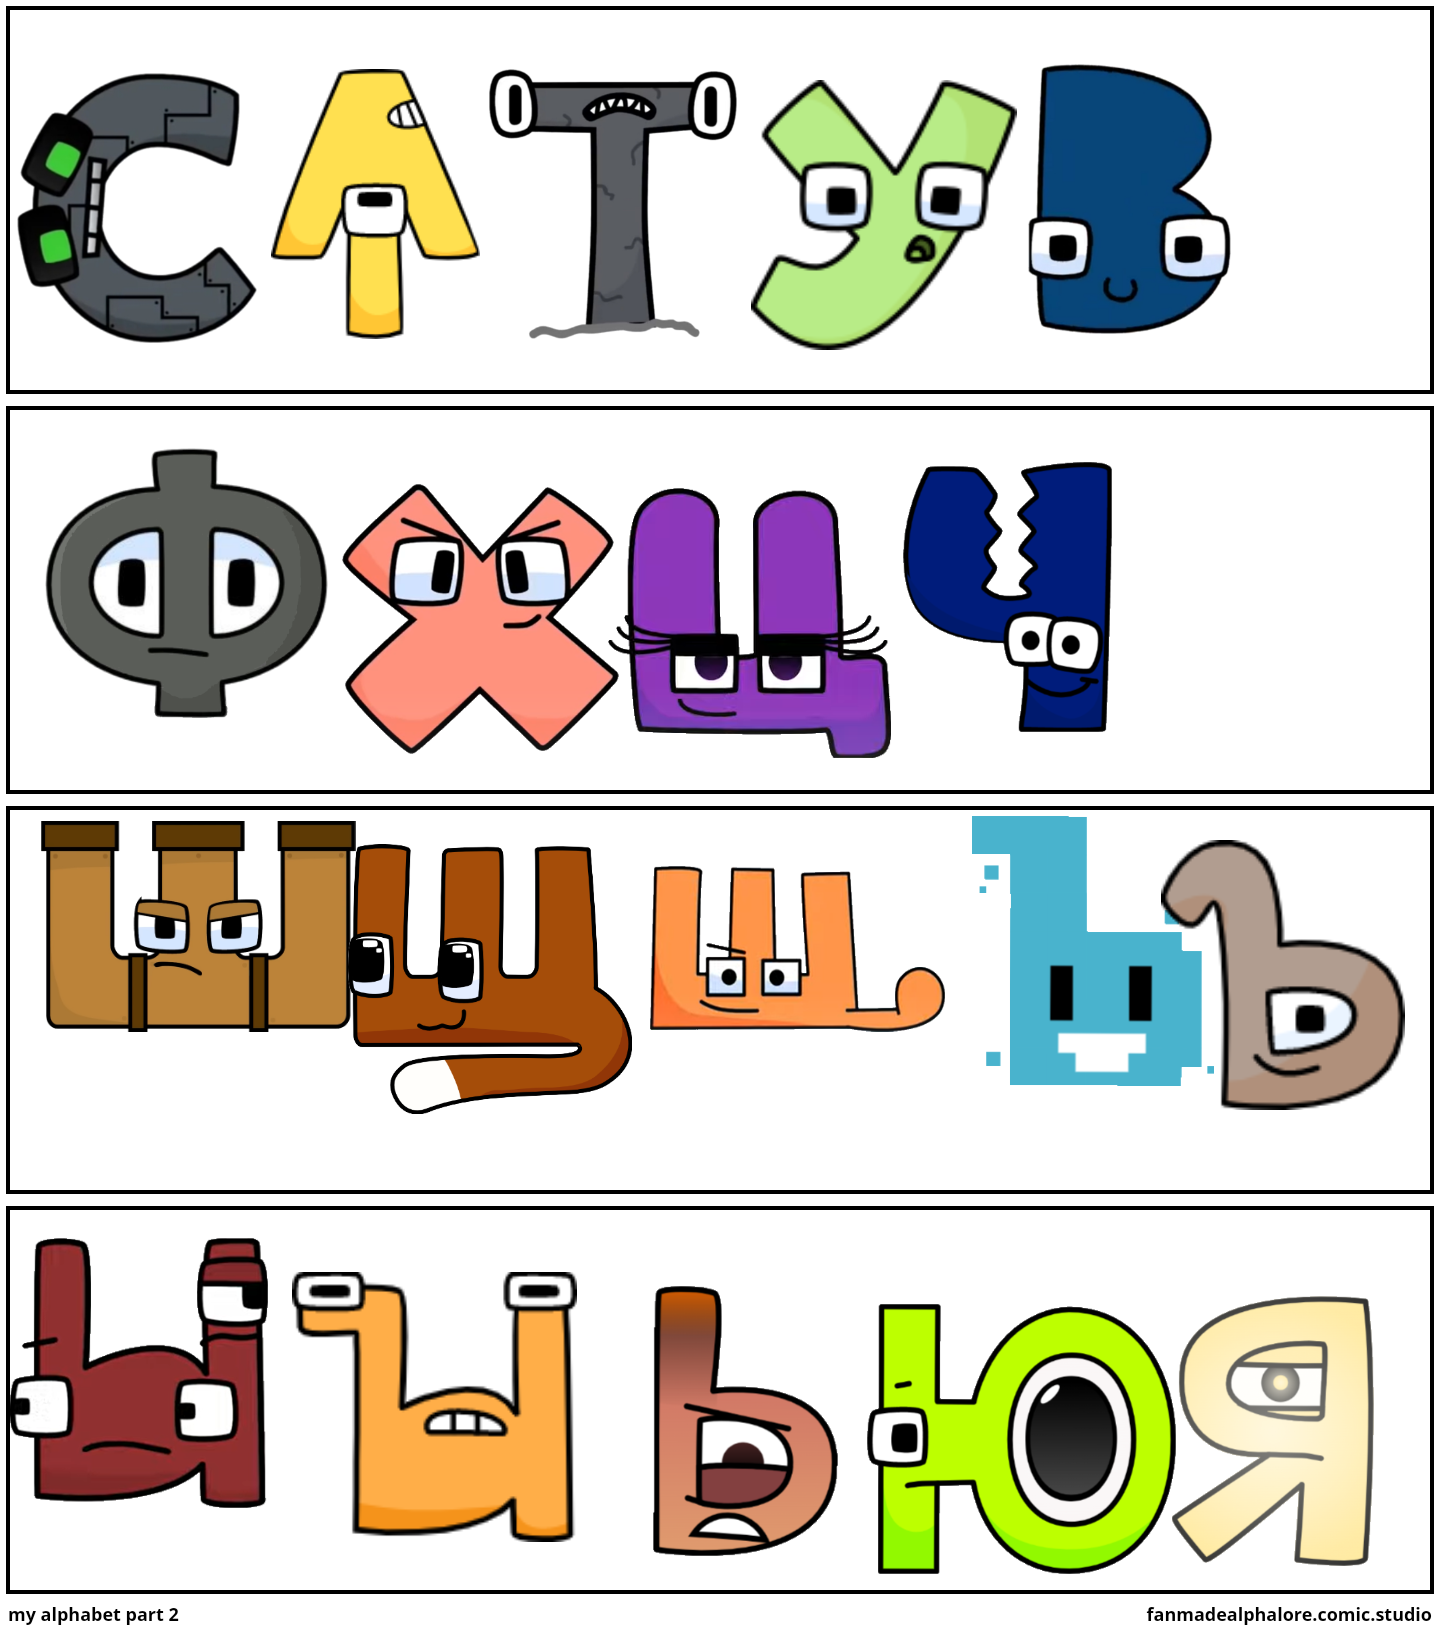 Unifon Alphabet Lore (Part 2 END) - Comic Studio